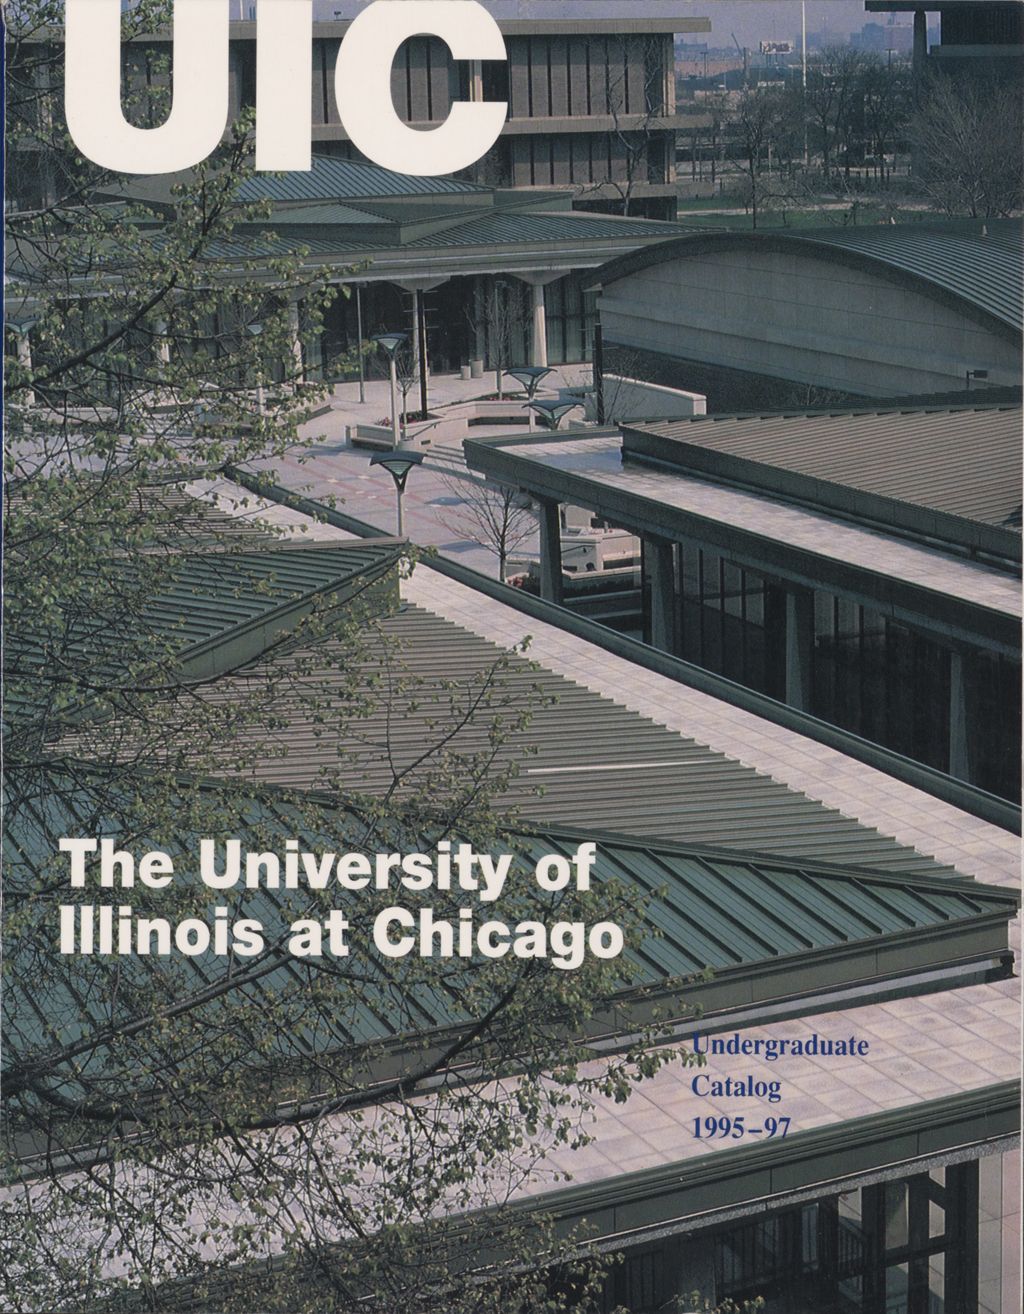 Miniature of Undergraduate Catalog, 1995-1997